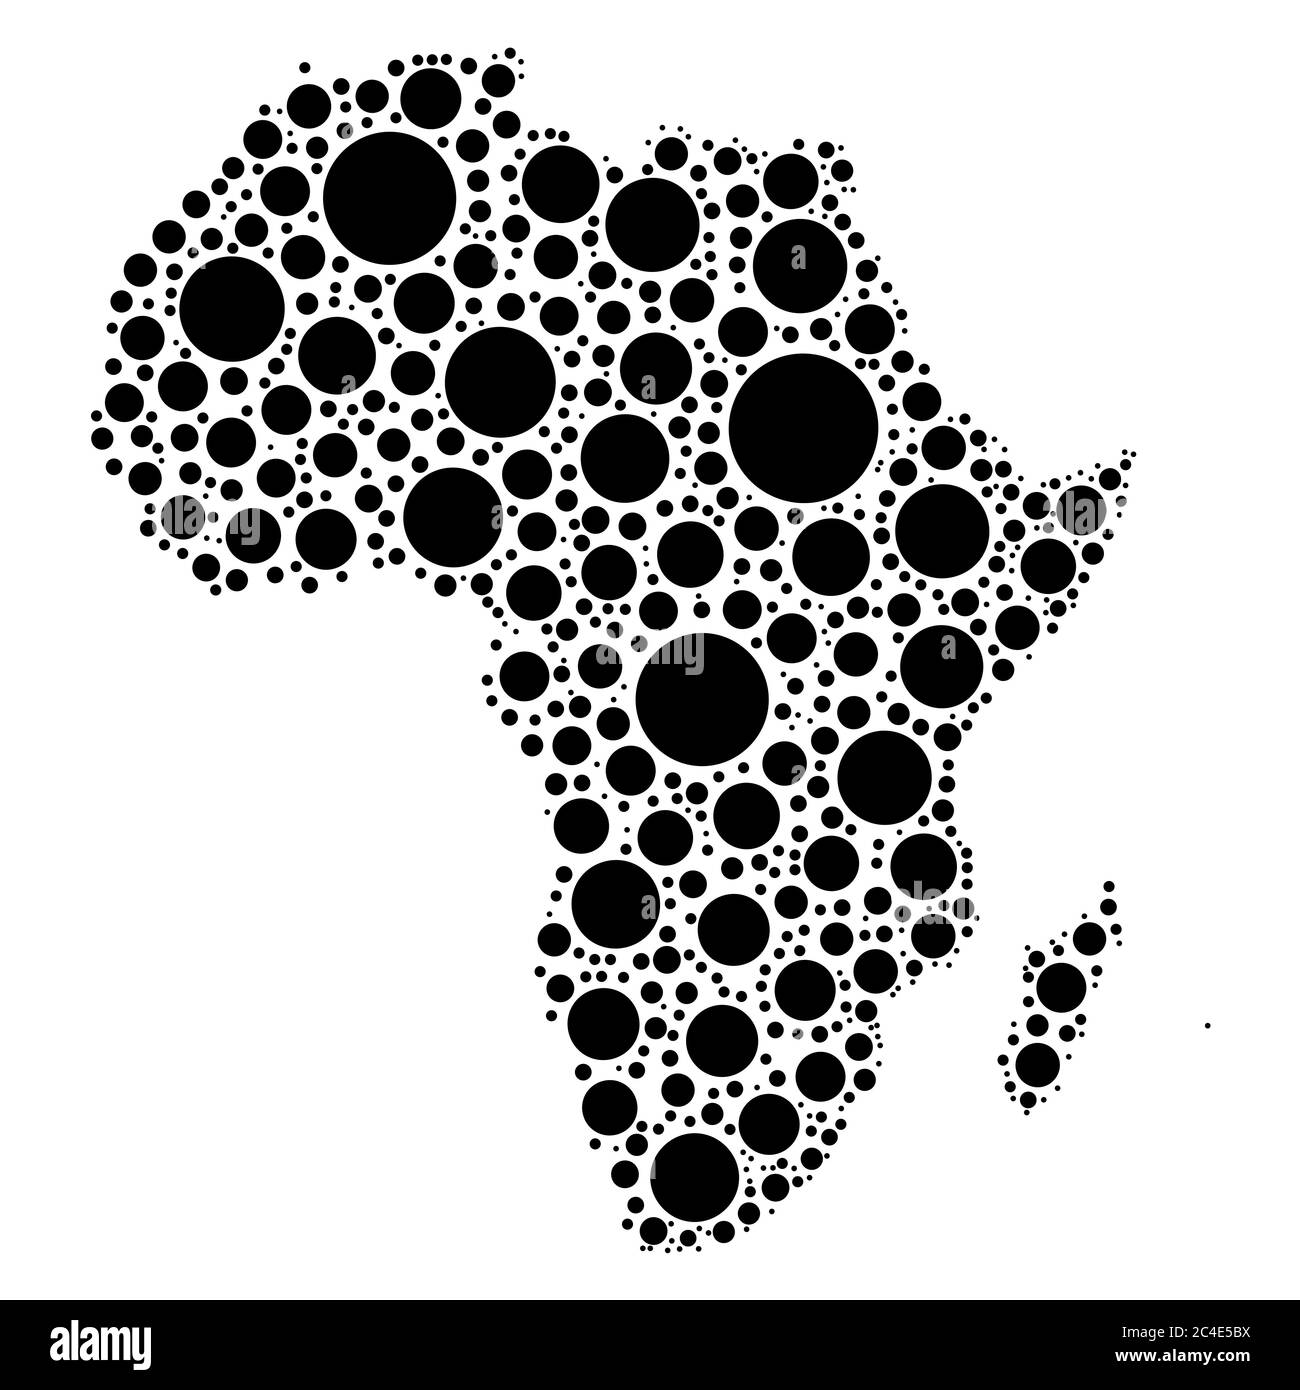 Afrique carte mosaïque de points noirs de différentes tailles sur fond blanc. Illustration vectorielle. Illustration de Vecteur